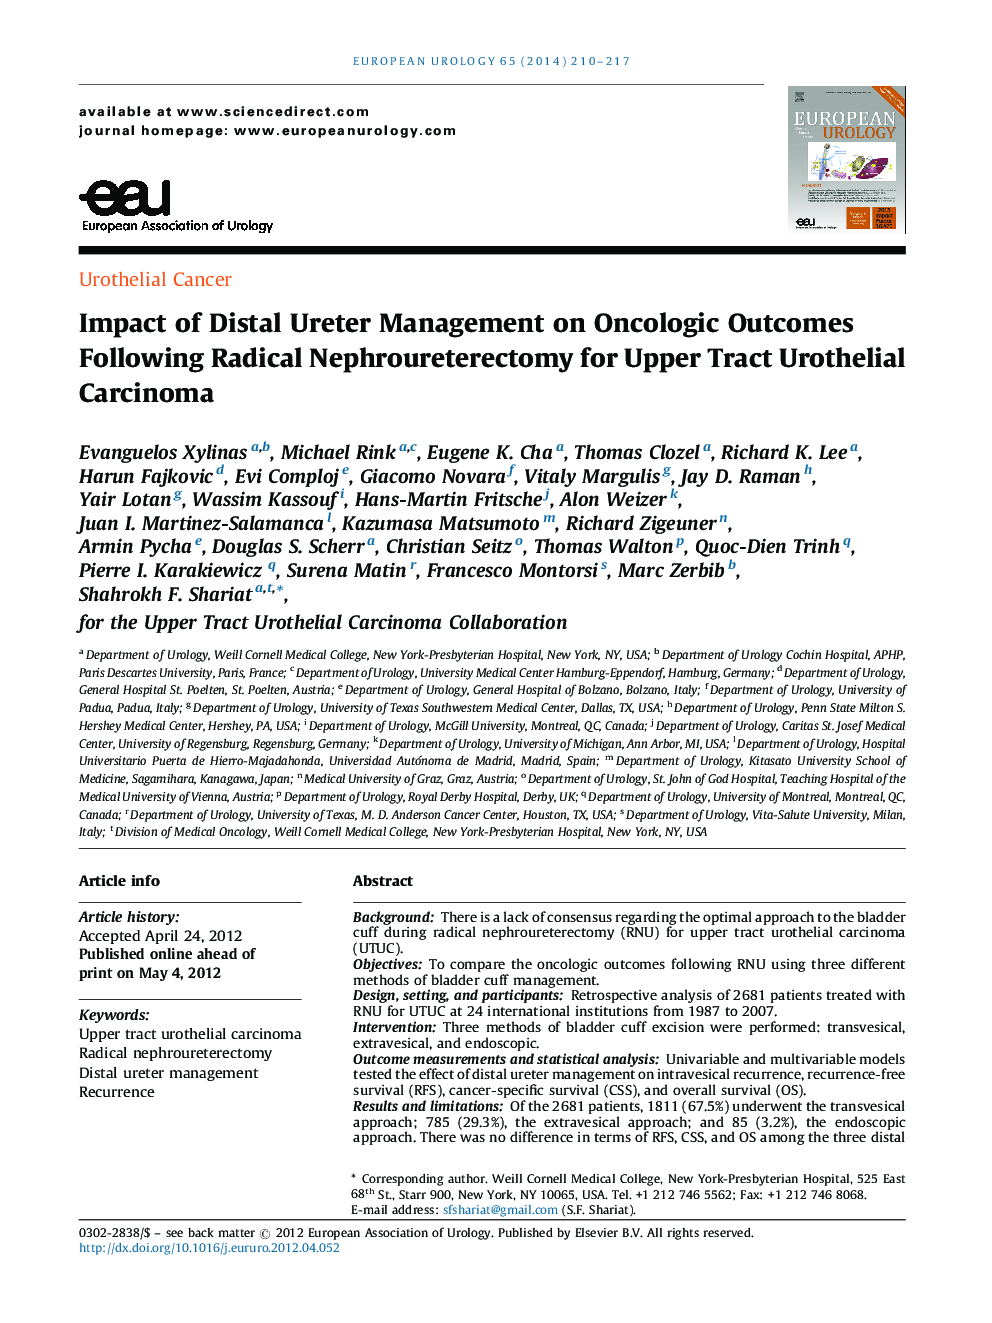 تأثیر مدیریت دیاستال اورتر در نتایج انکولوژیک پس از نفروتورکتومی رادیکال برای کارسینوم اورکتهیلالی فوقانی 